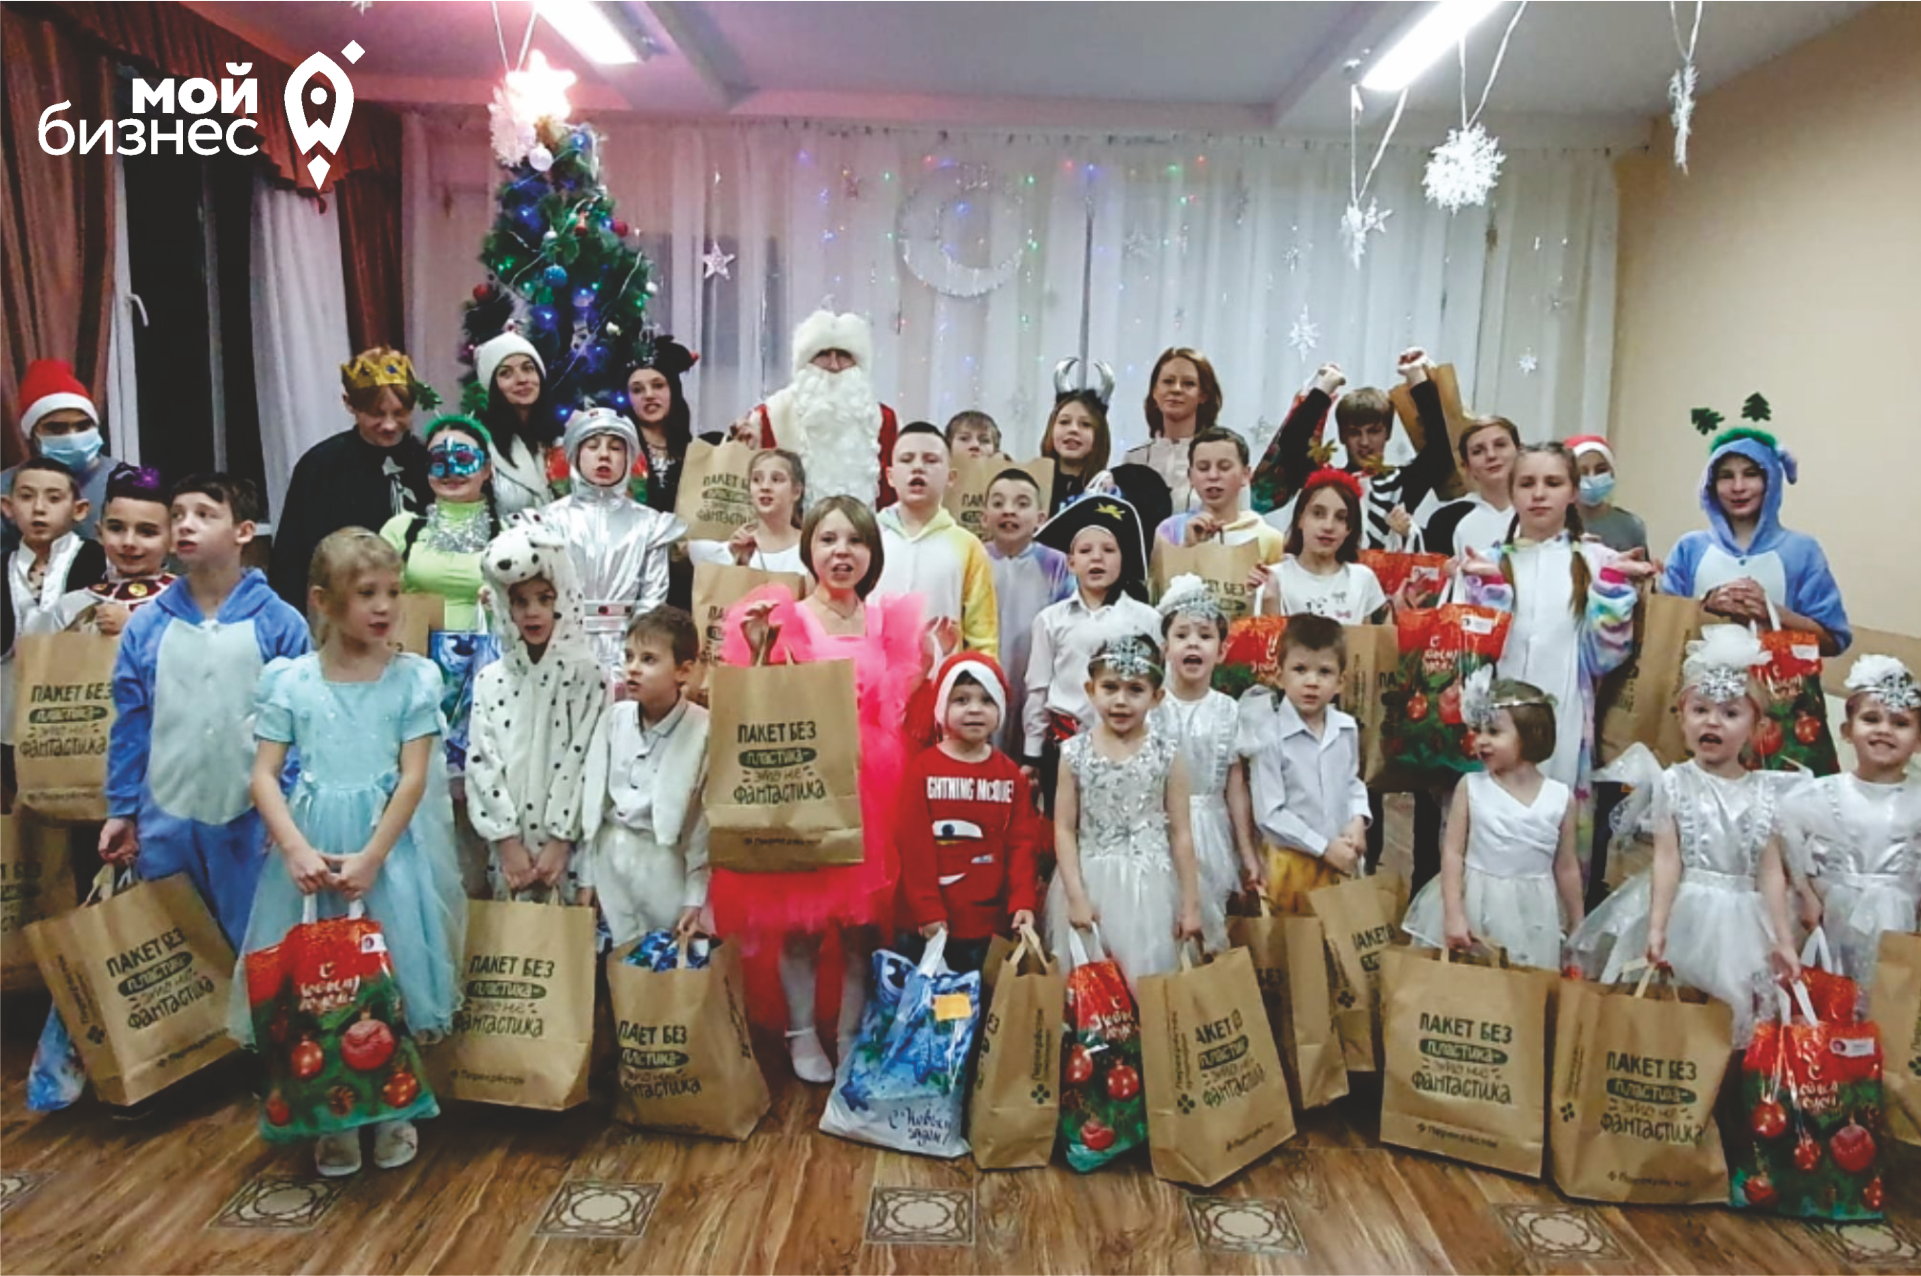 В Волгограде вручили новогодние подарки детям в рамках акции #Мойбизнеспомогает